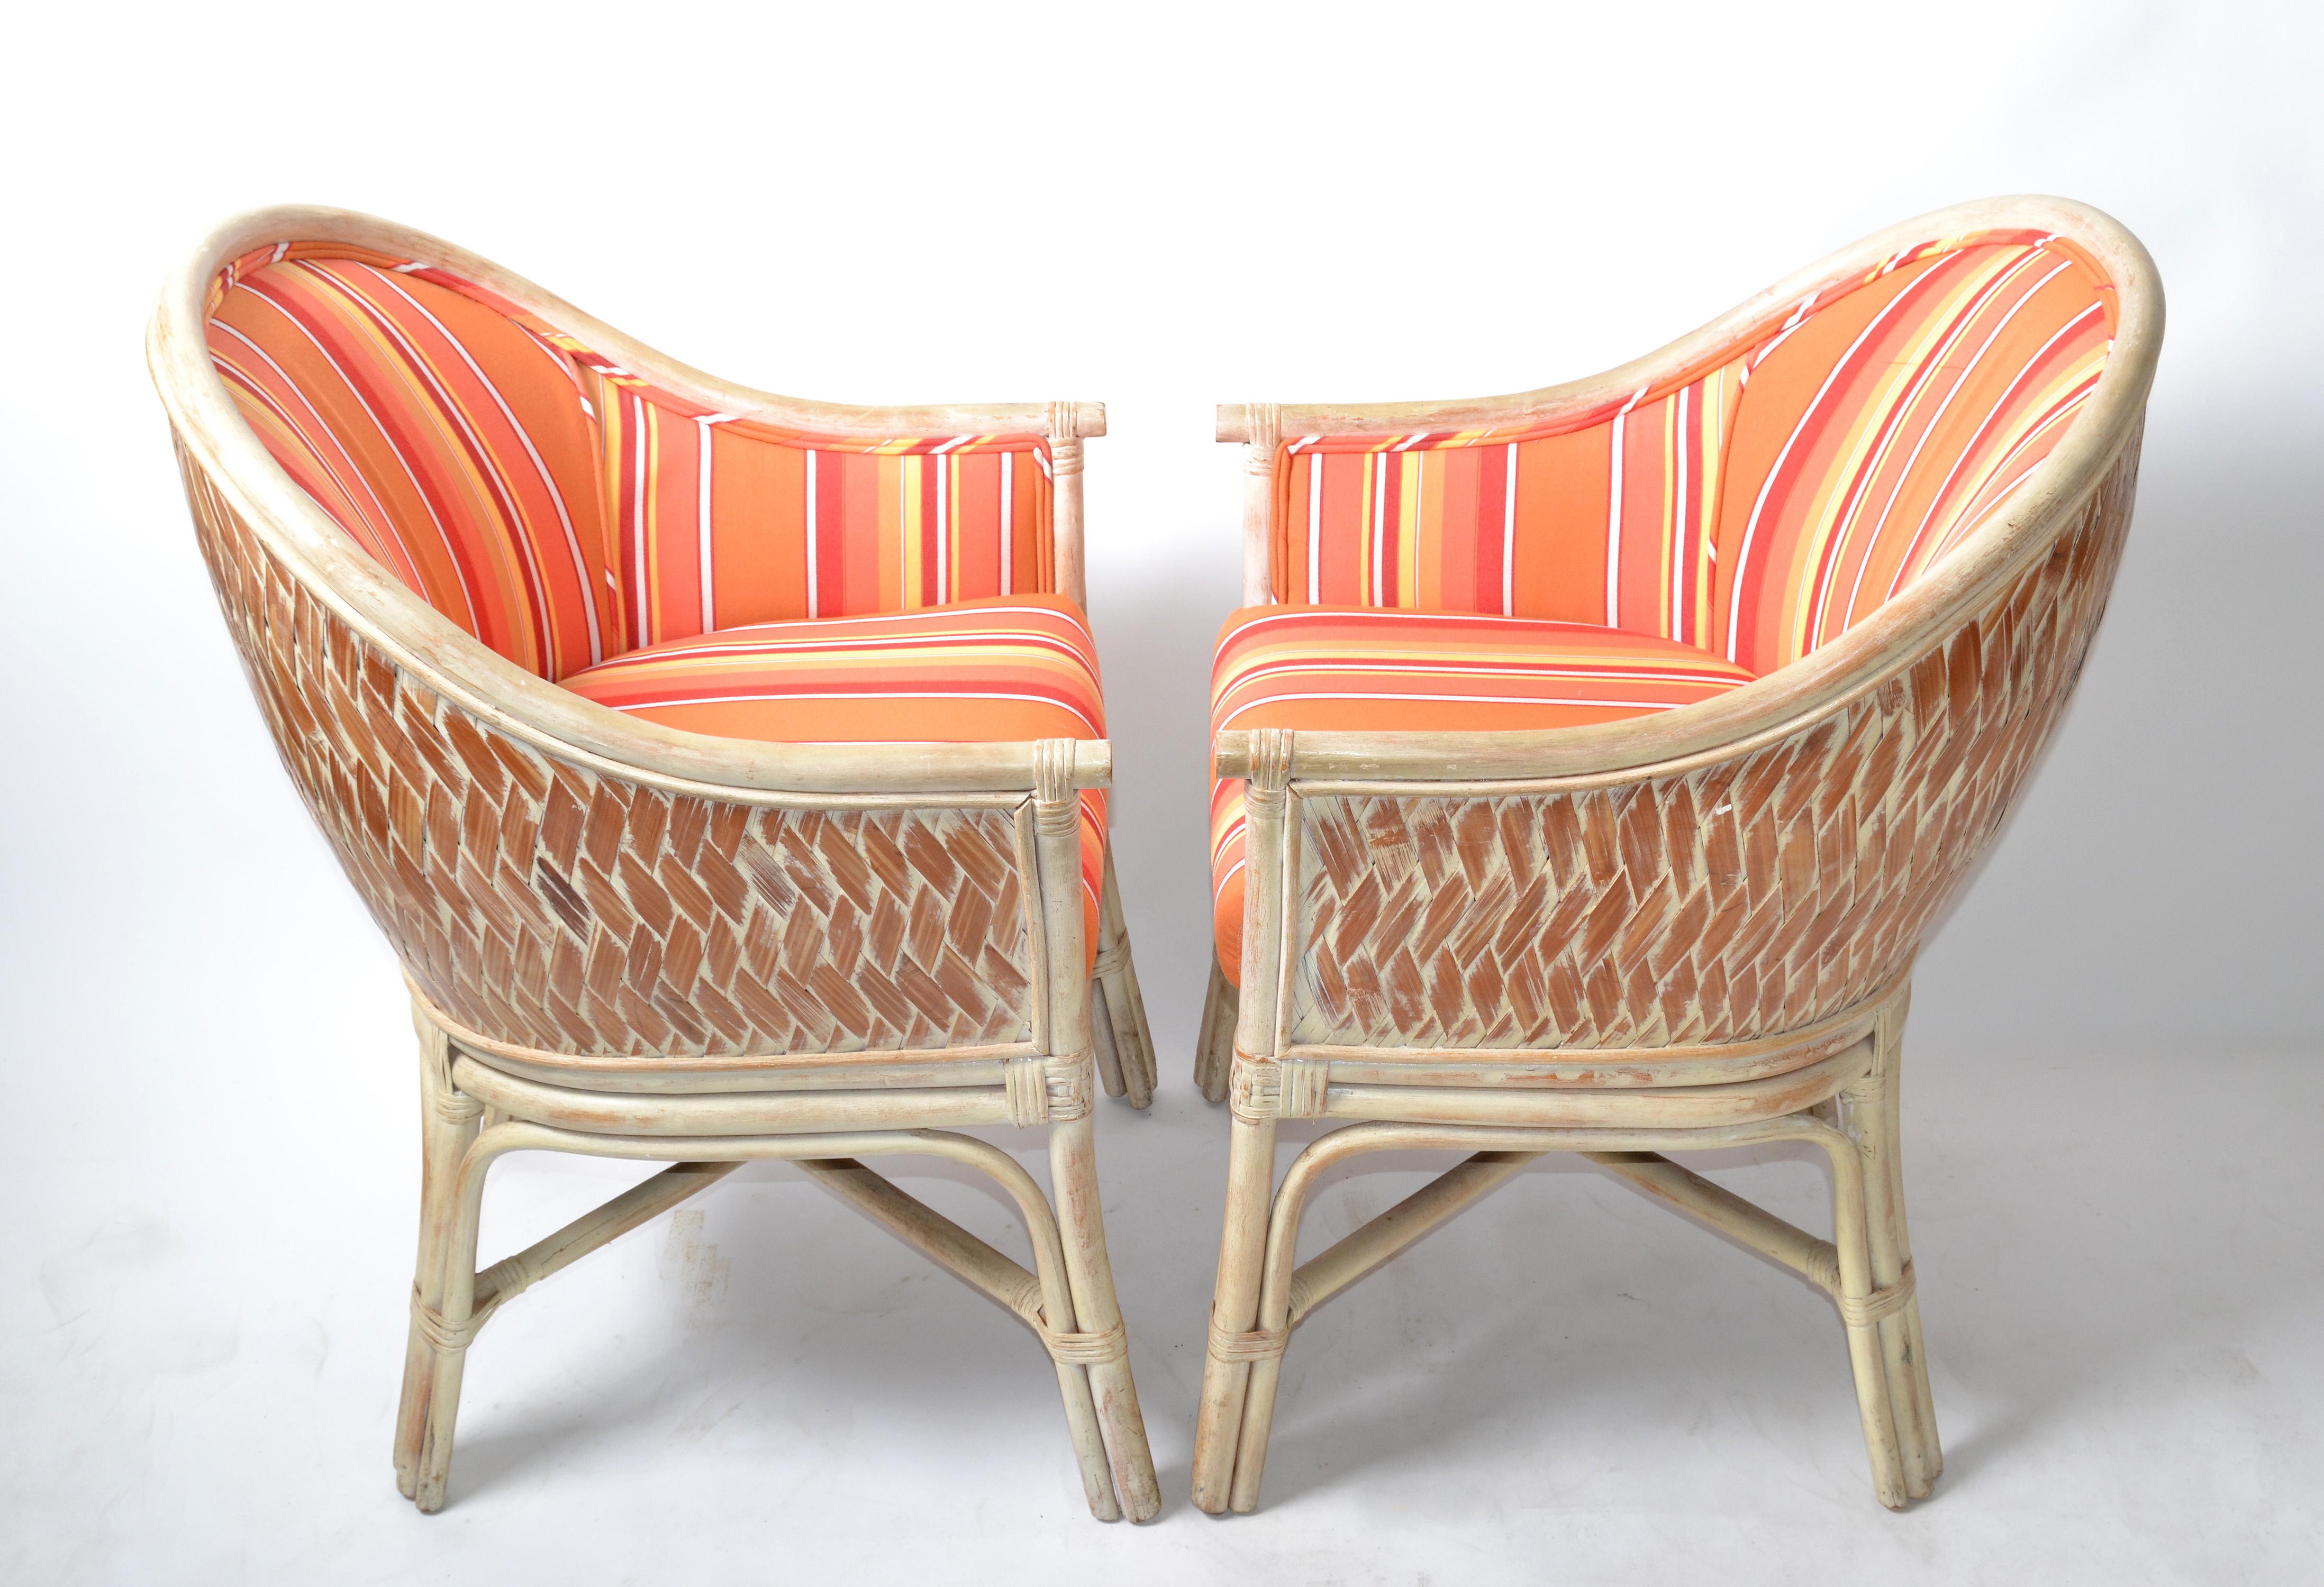 Paire de fauteuils de style Whiting en bambou lavé blanc et canne tressée à la main, avec base décorative en X.
Tissu de coton rayé orange vif. Chaque chaise est équipée d'un coussin d'assise confortable.
Mesures : Hauteur de l'accoudoir 24.5